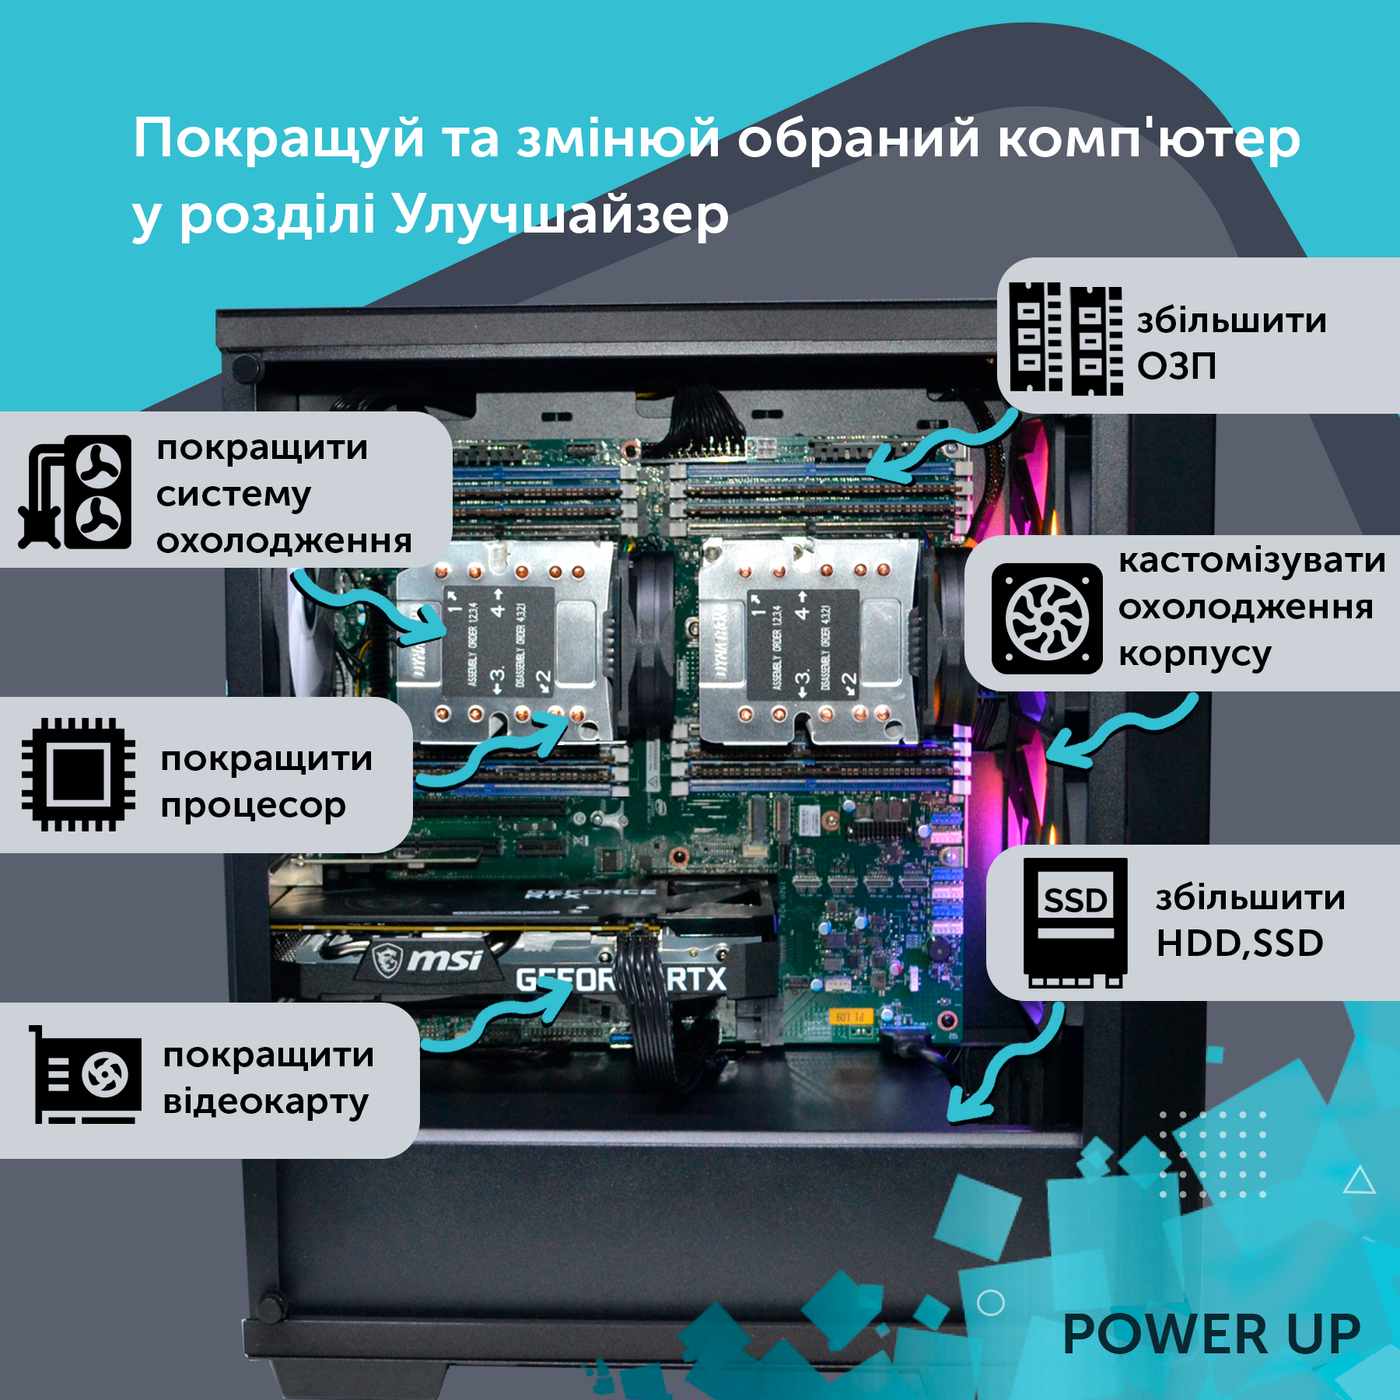 Робоча станція PowerUp Desktop #46 Core i9 10900K/32 GB/HDD 1 TB/SSD 512GB/GeForce RTX 3070 8GB